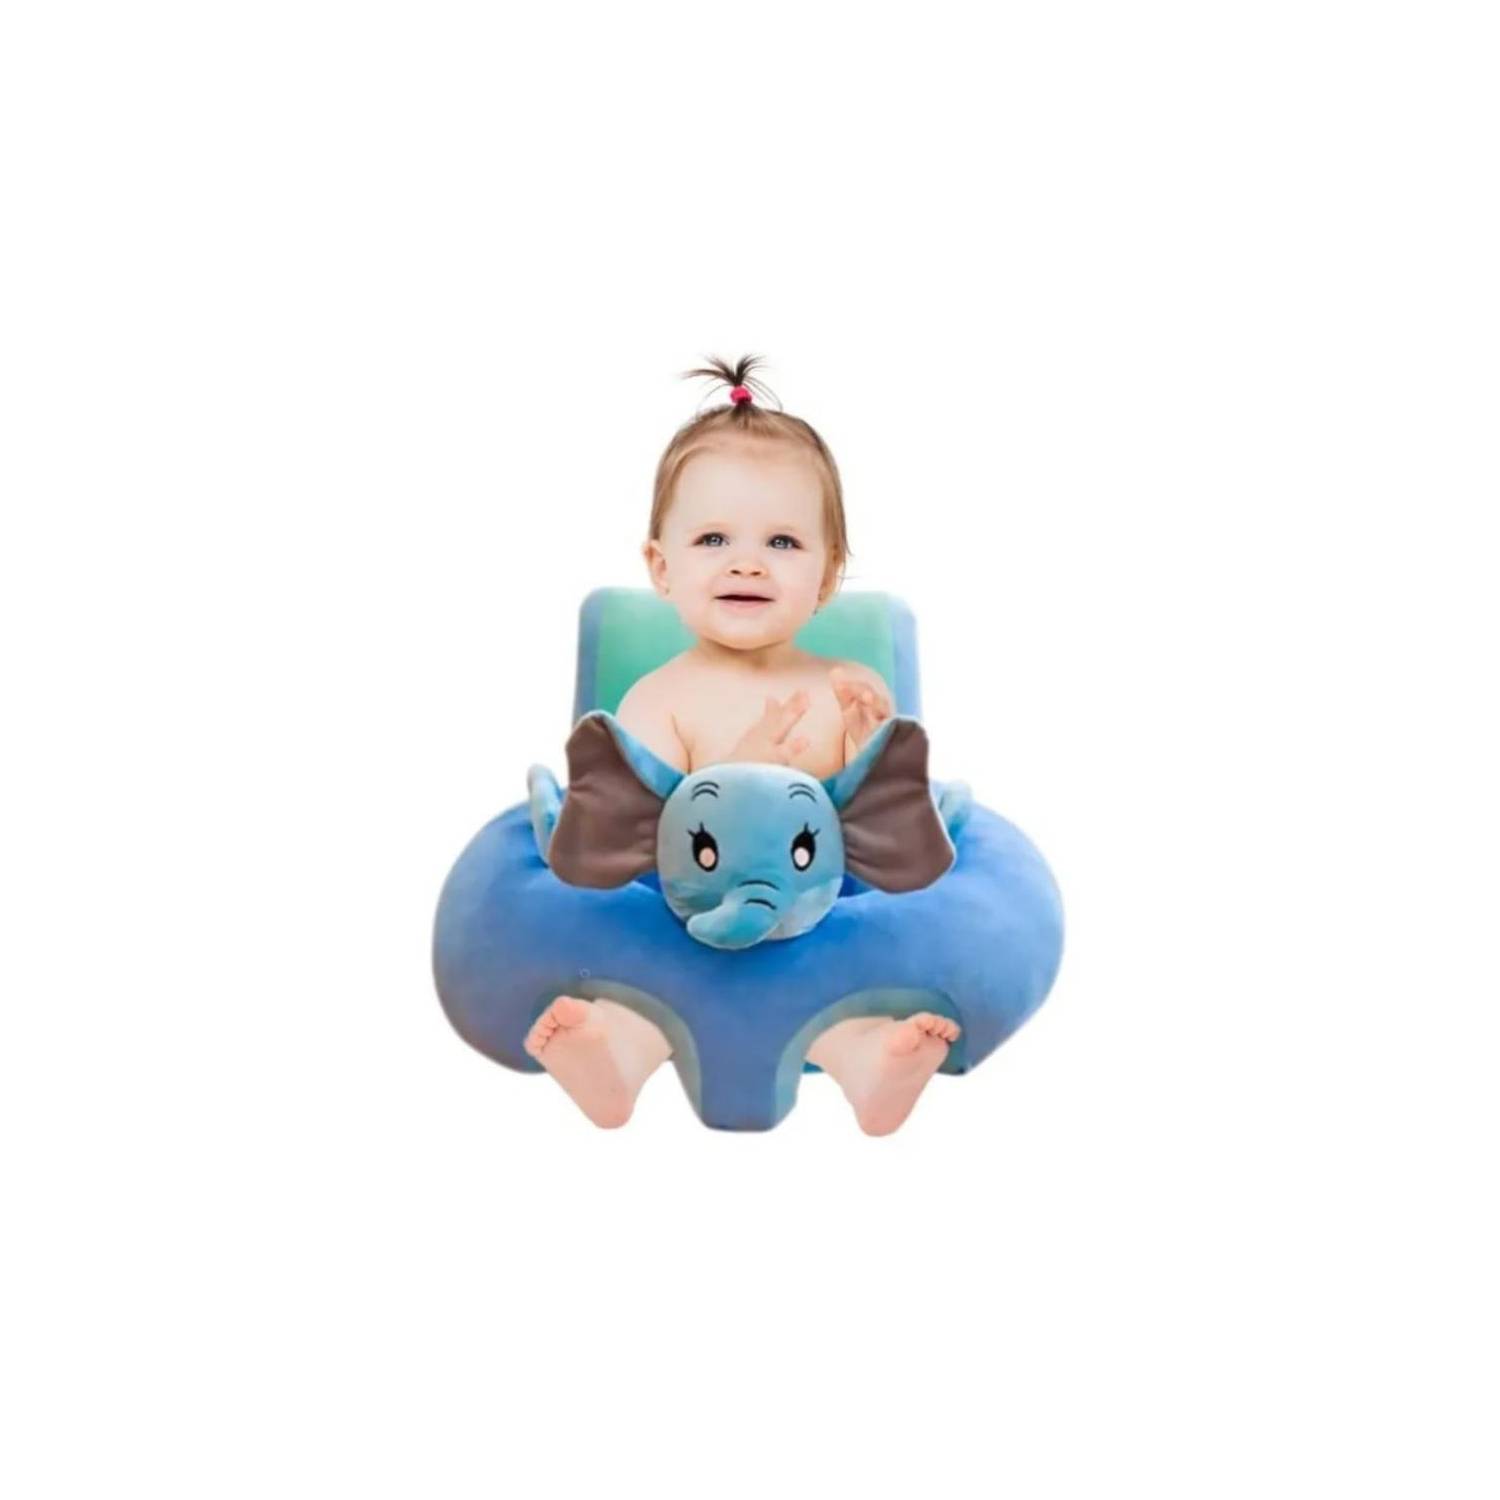 Cojin almohada para sentar al bebé animales sapo jq-3 GENERICO